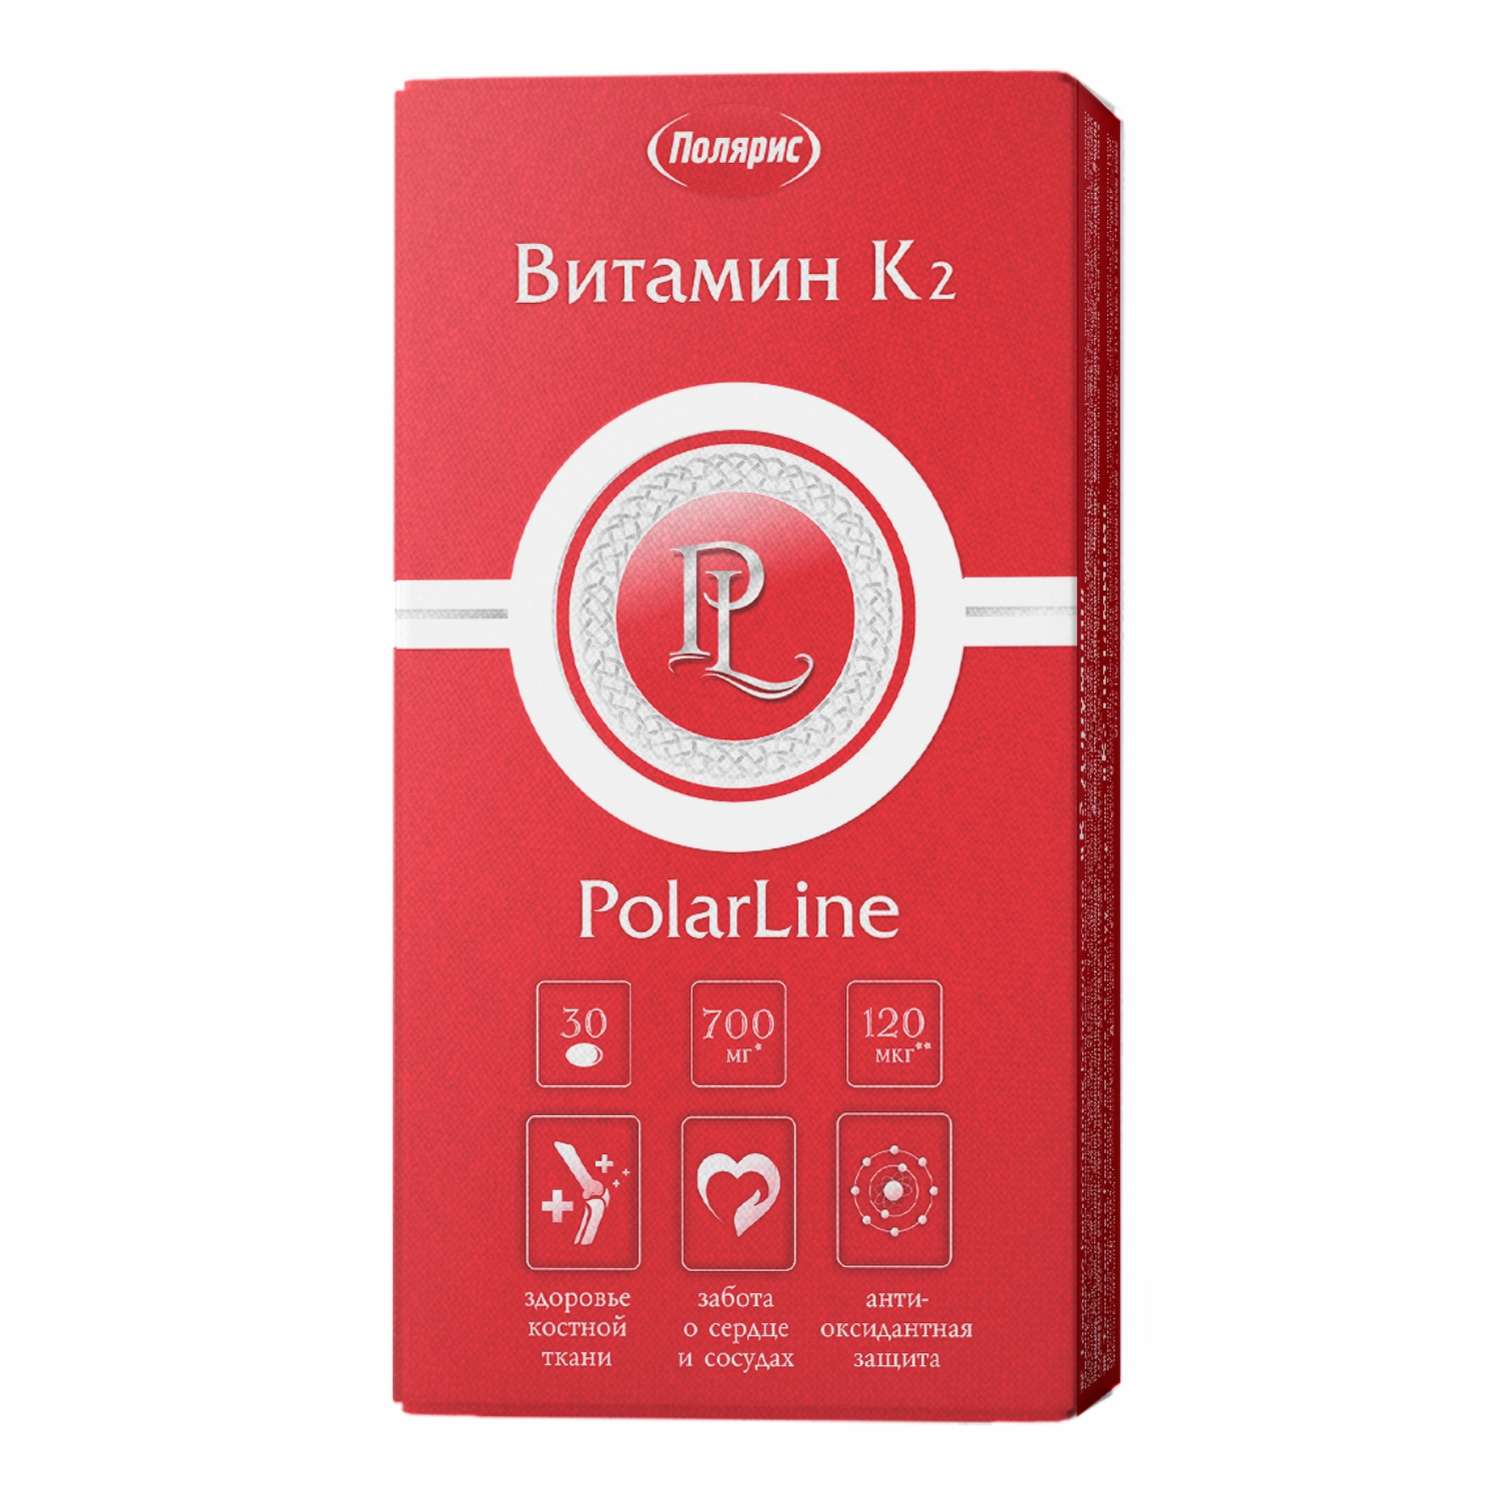 Биологически активная добавка PolarLine Витамин К2 700мг 30капсул - фото 1